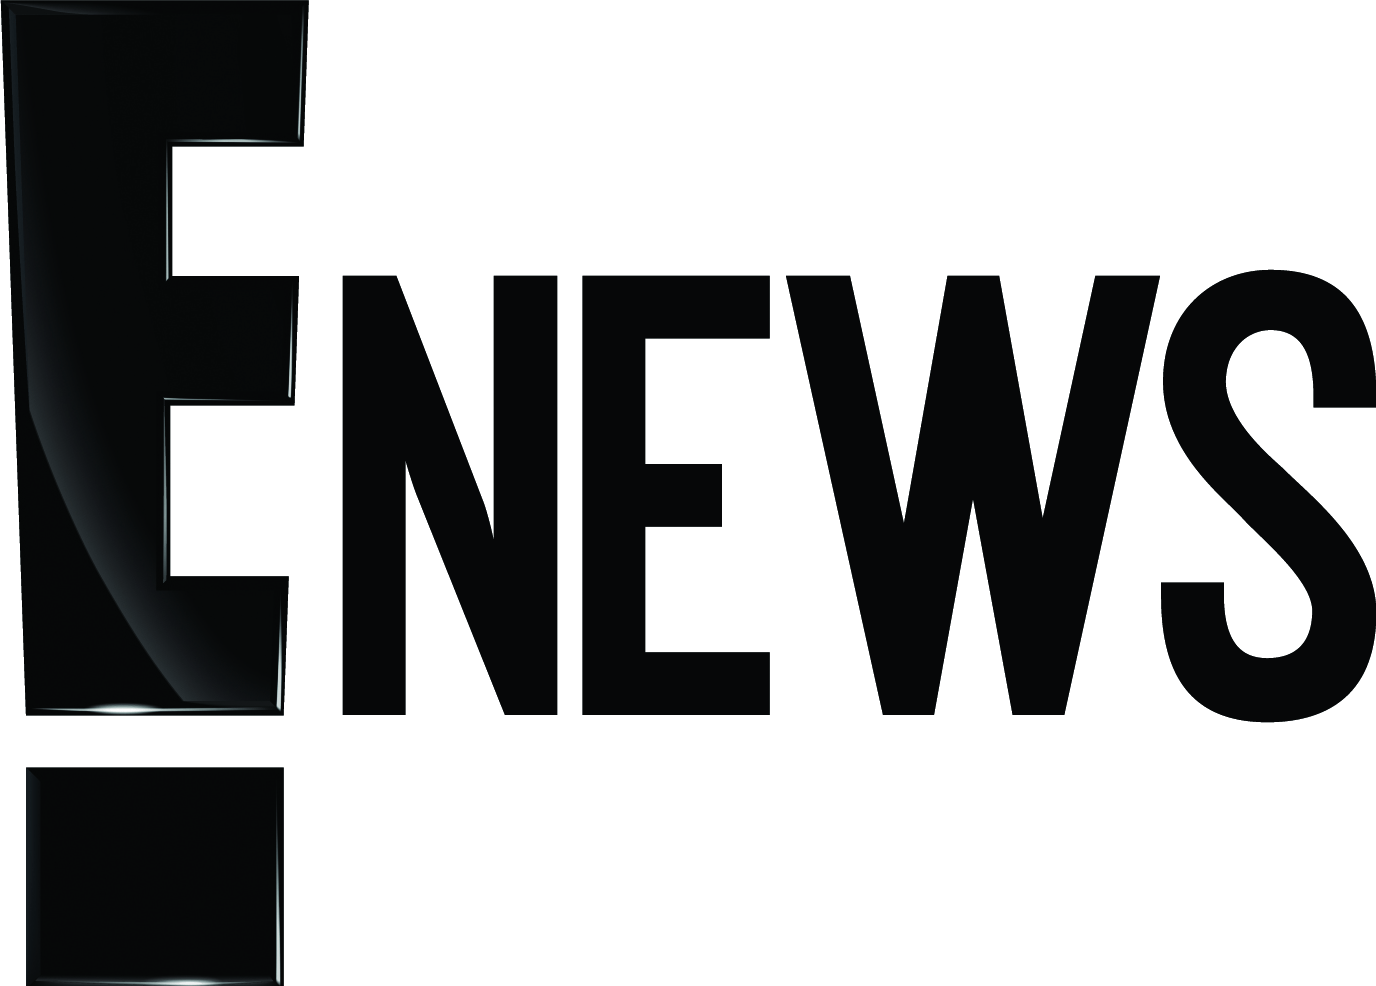 E News Logo - E! News current logo.png